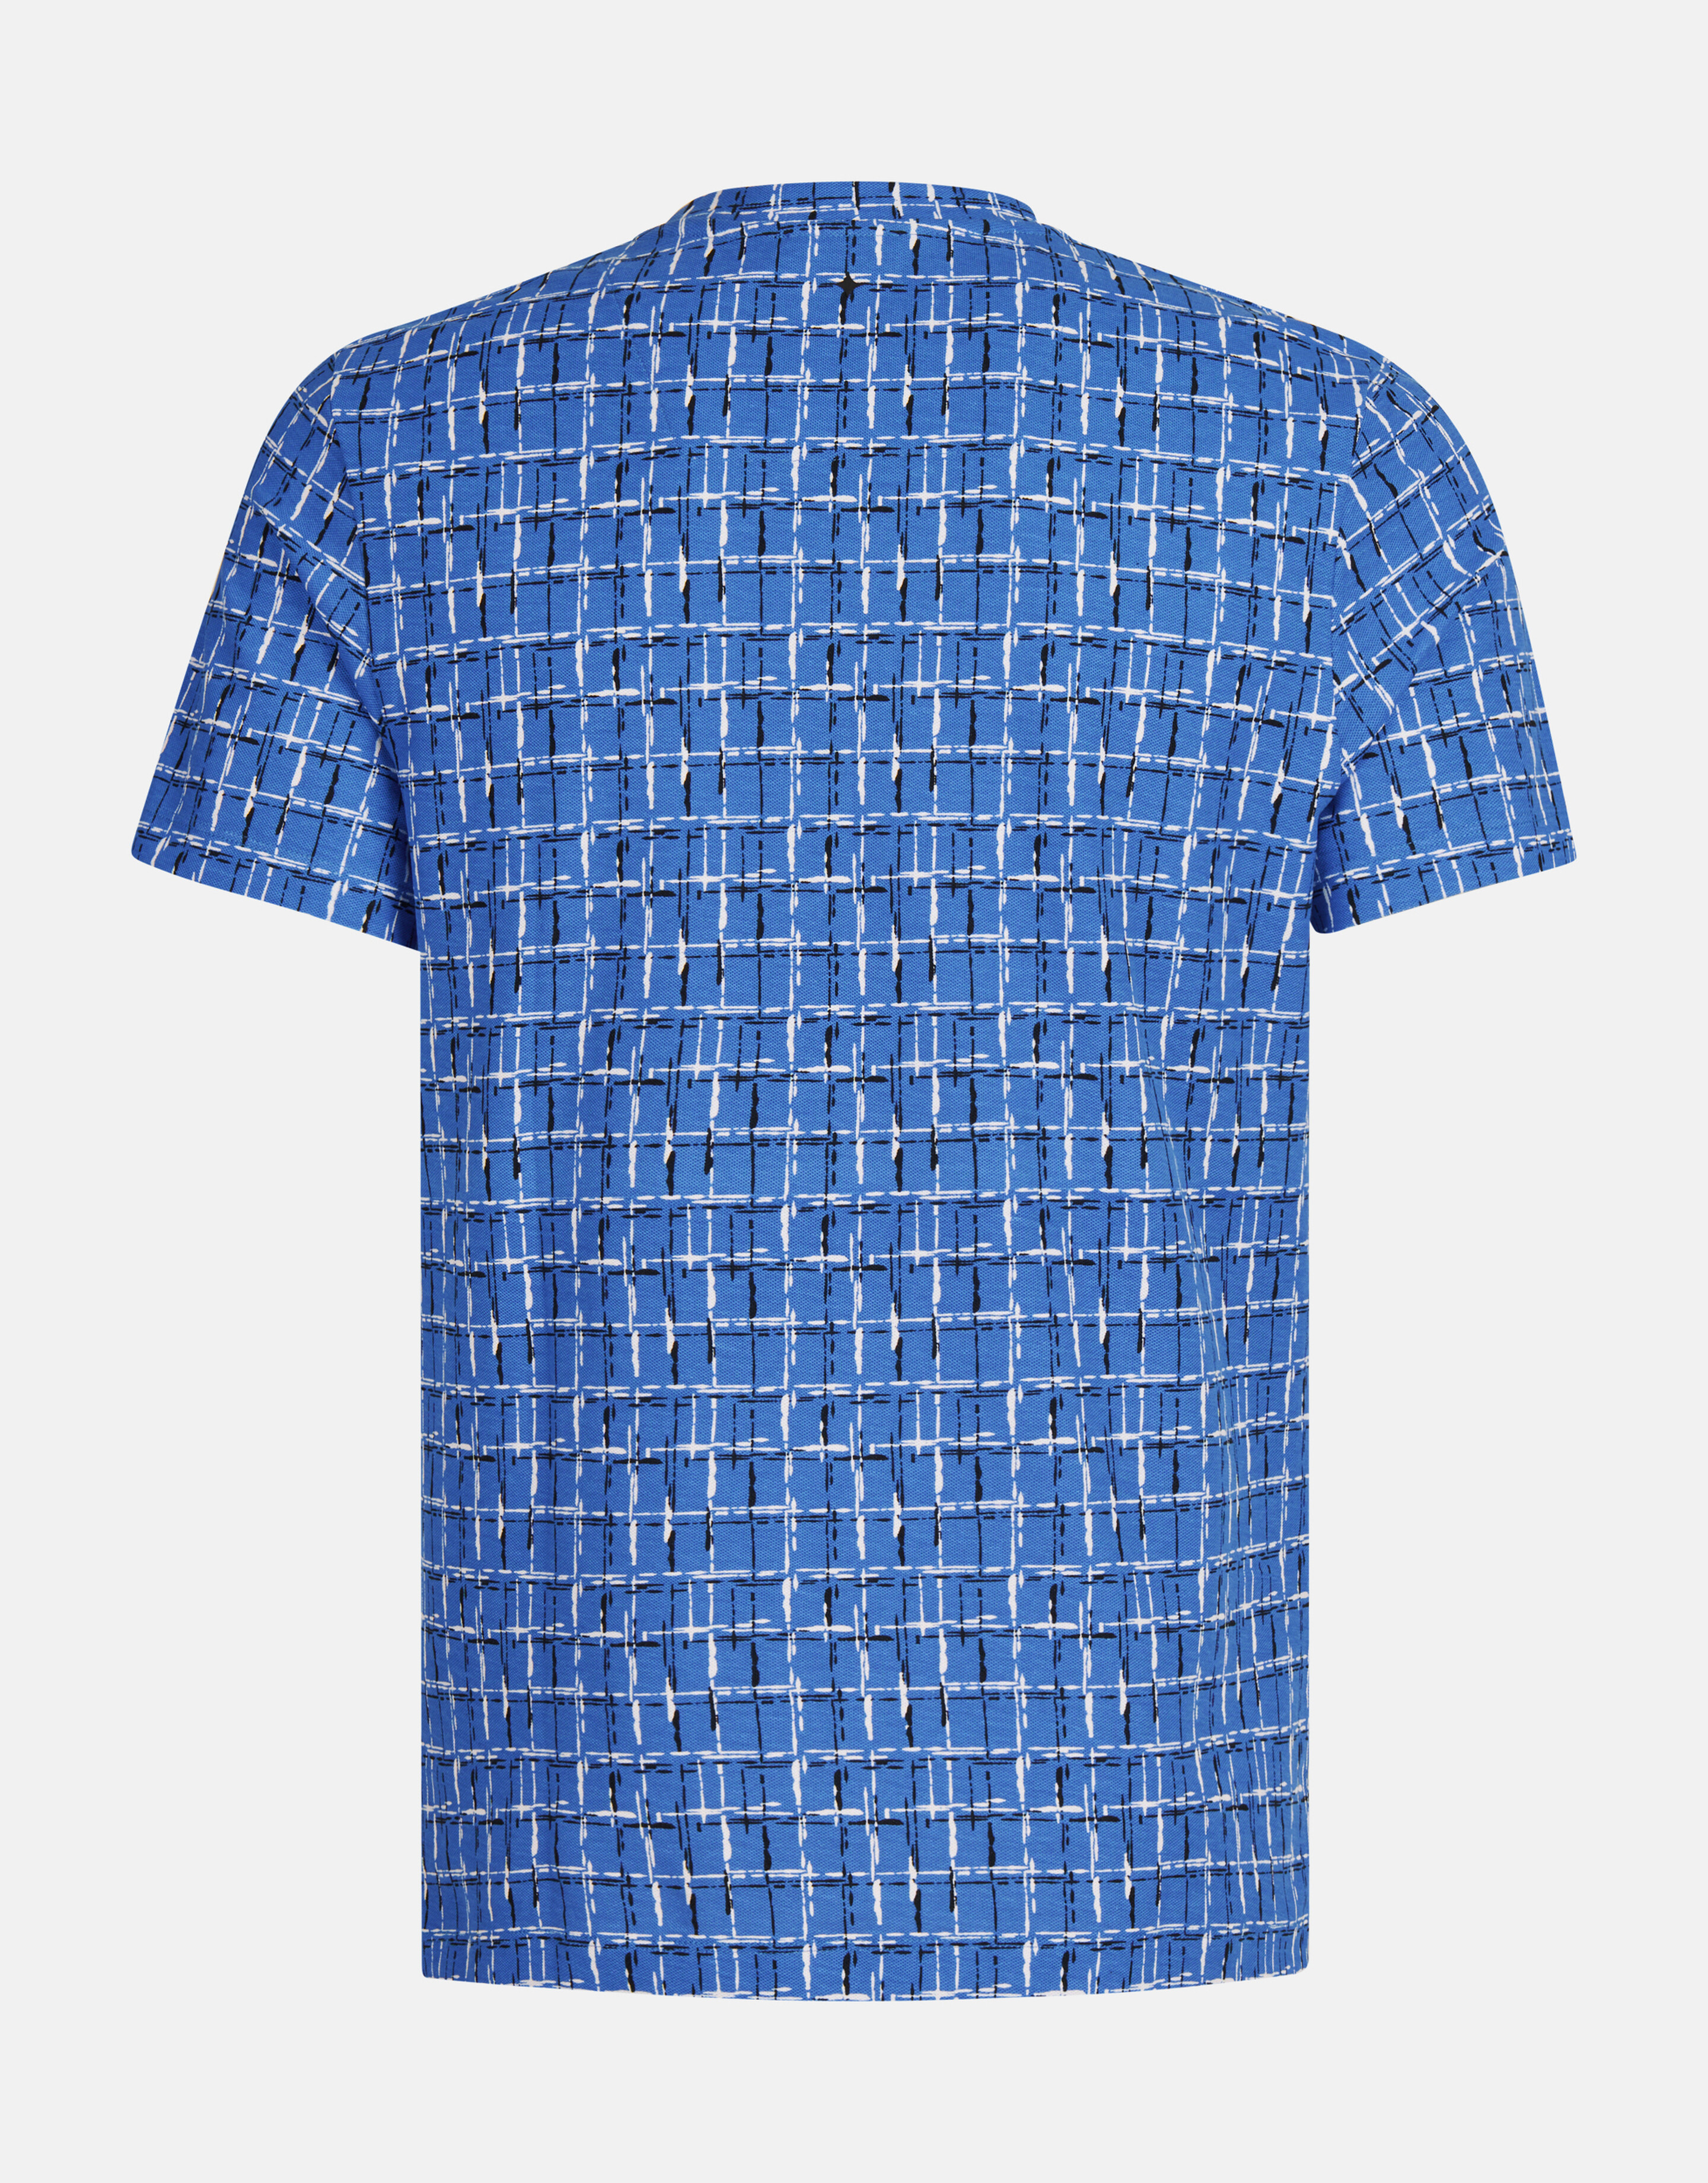 Bedrucktes T-shirt Blau SHOEBY MEN